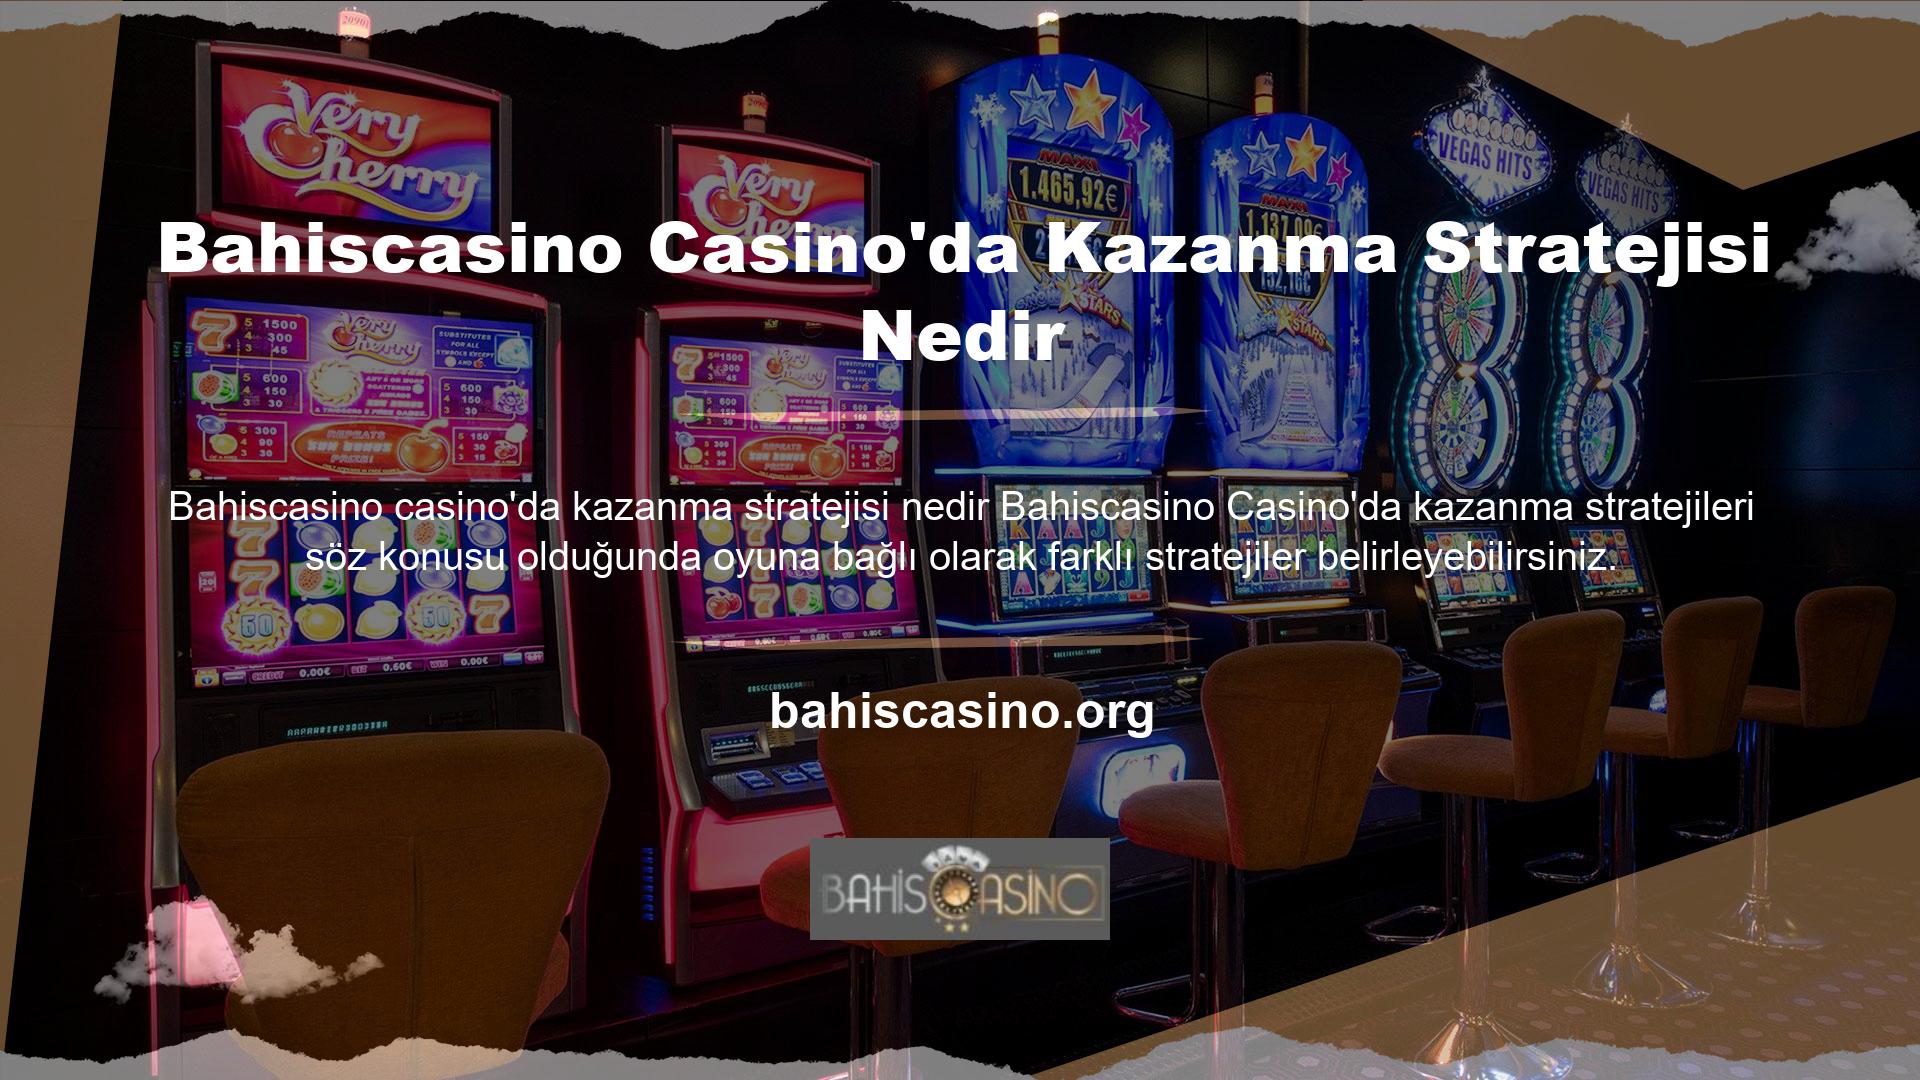 Casino hizmetindeki tüm oyunlar yazılım kullanılarak geliştirilmektedir